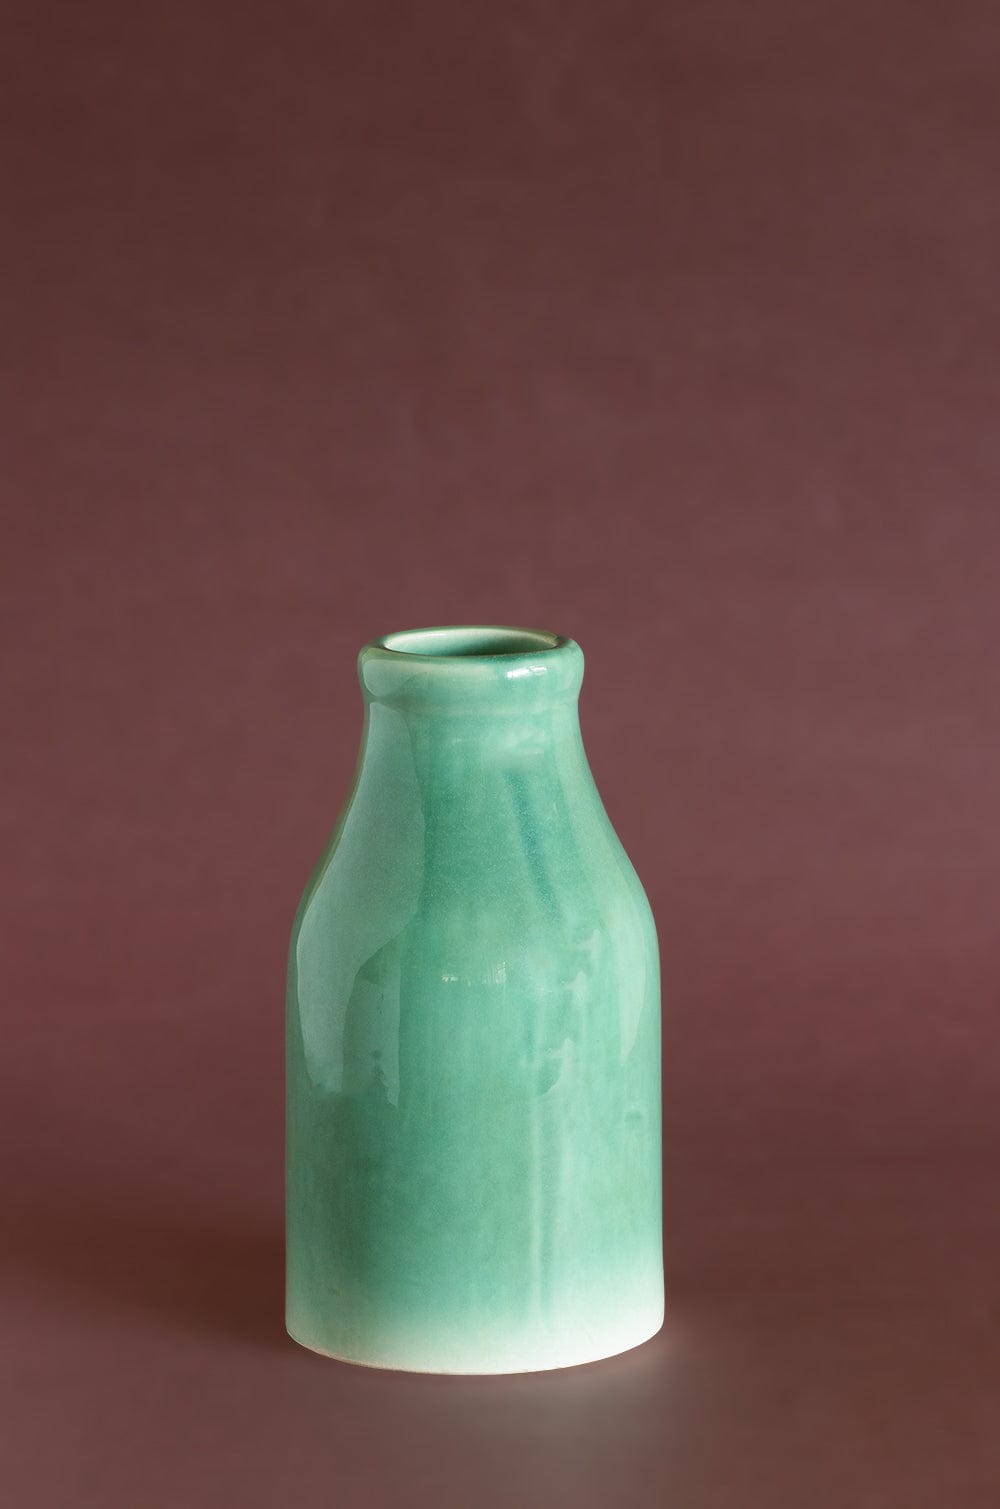 Bisque Ceramic Bottle Vase